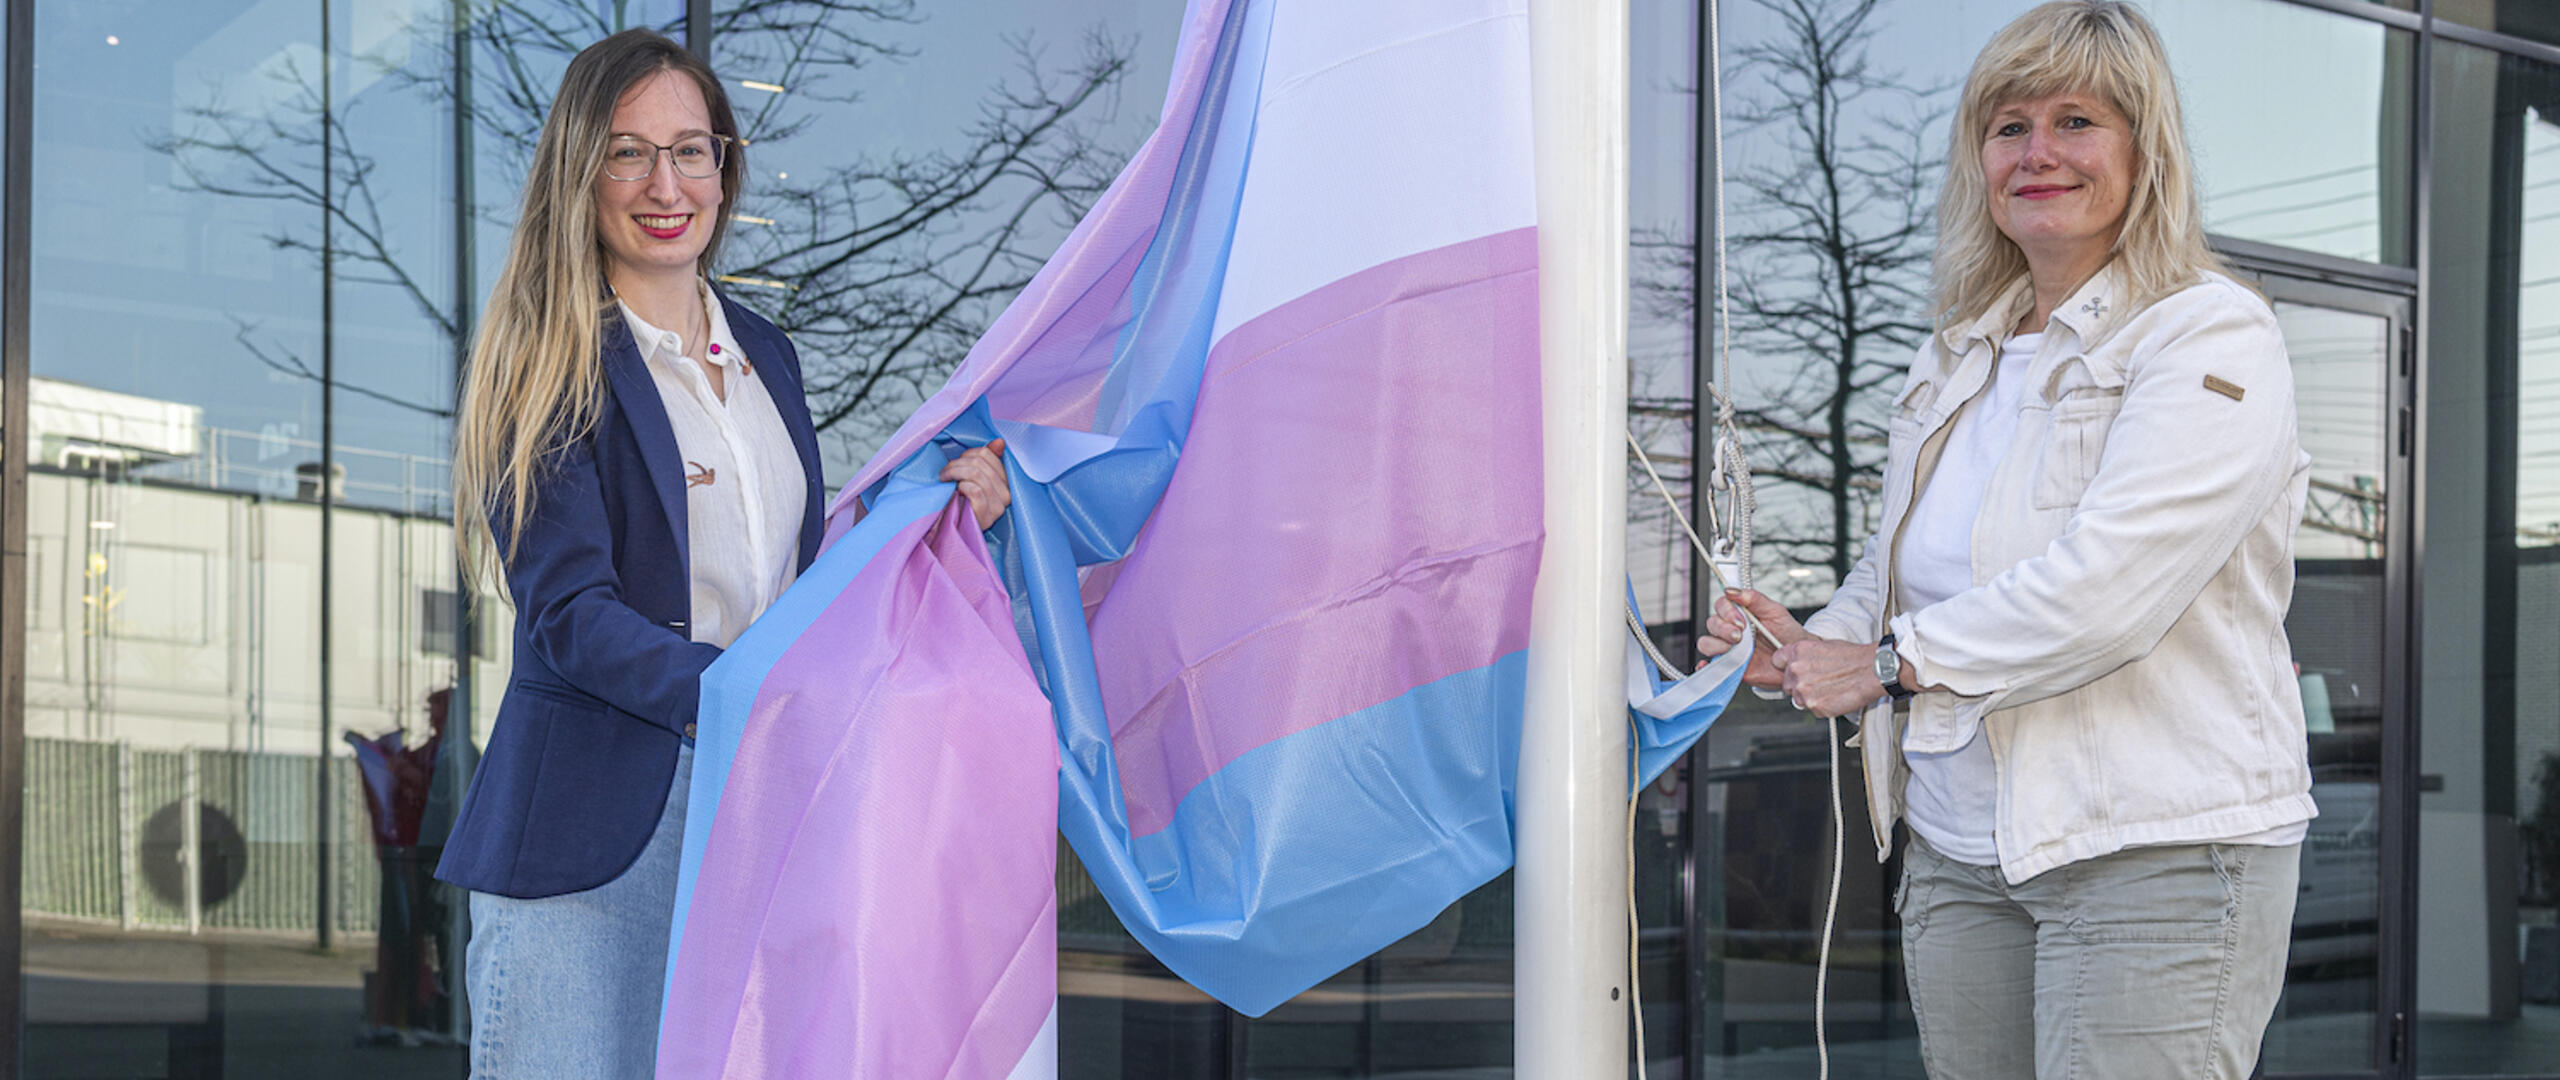 Twee dames bij regenboogvlag